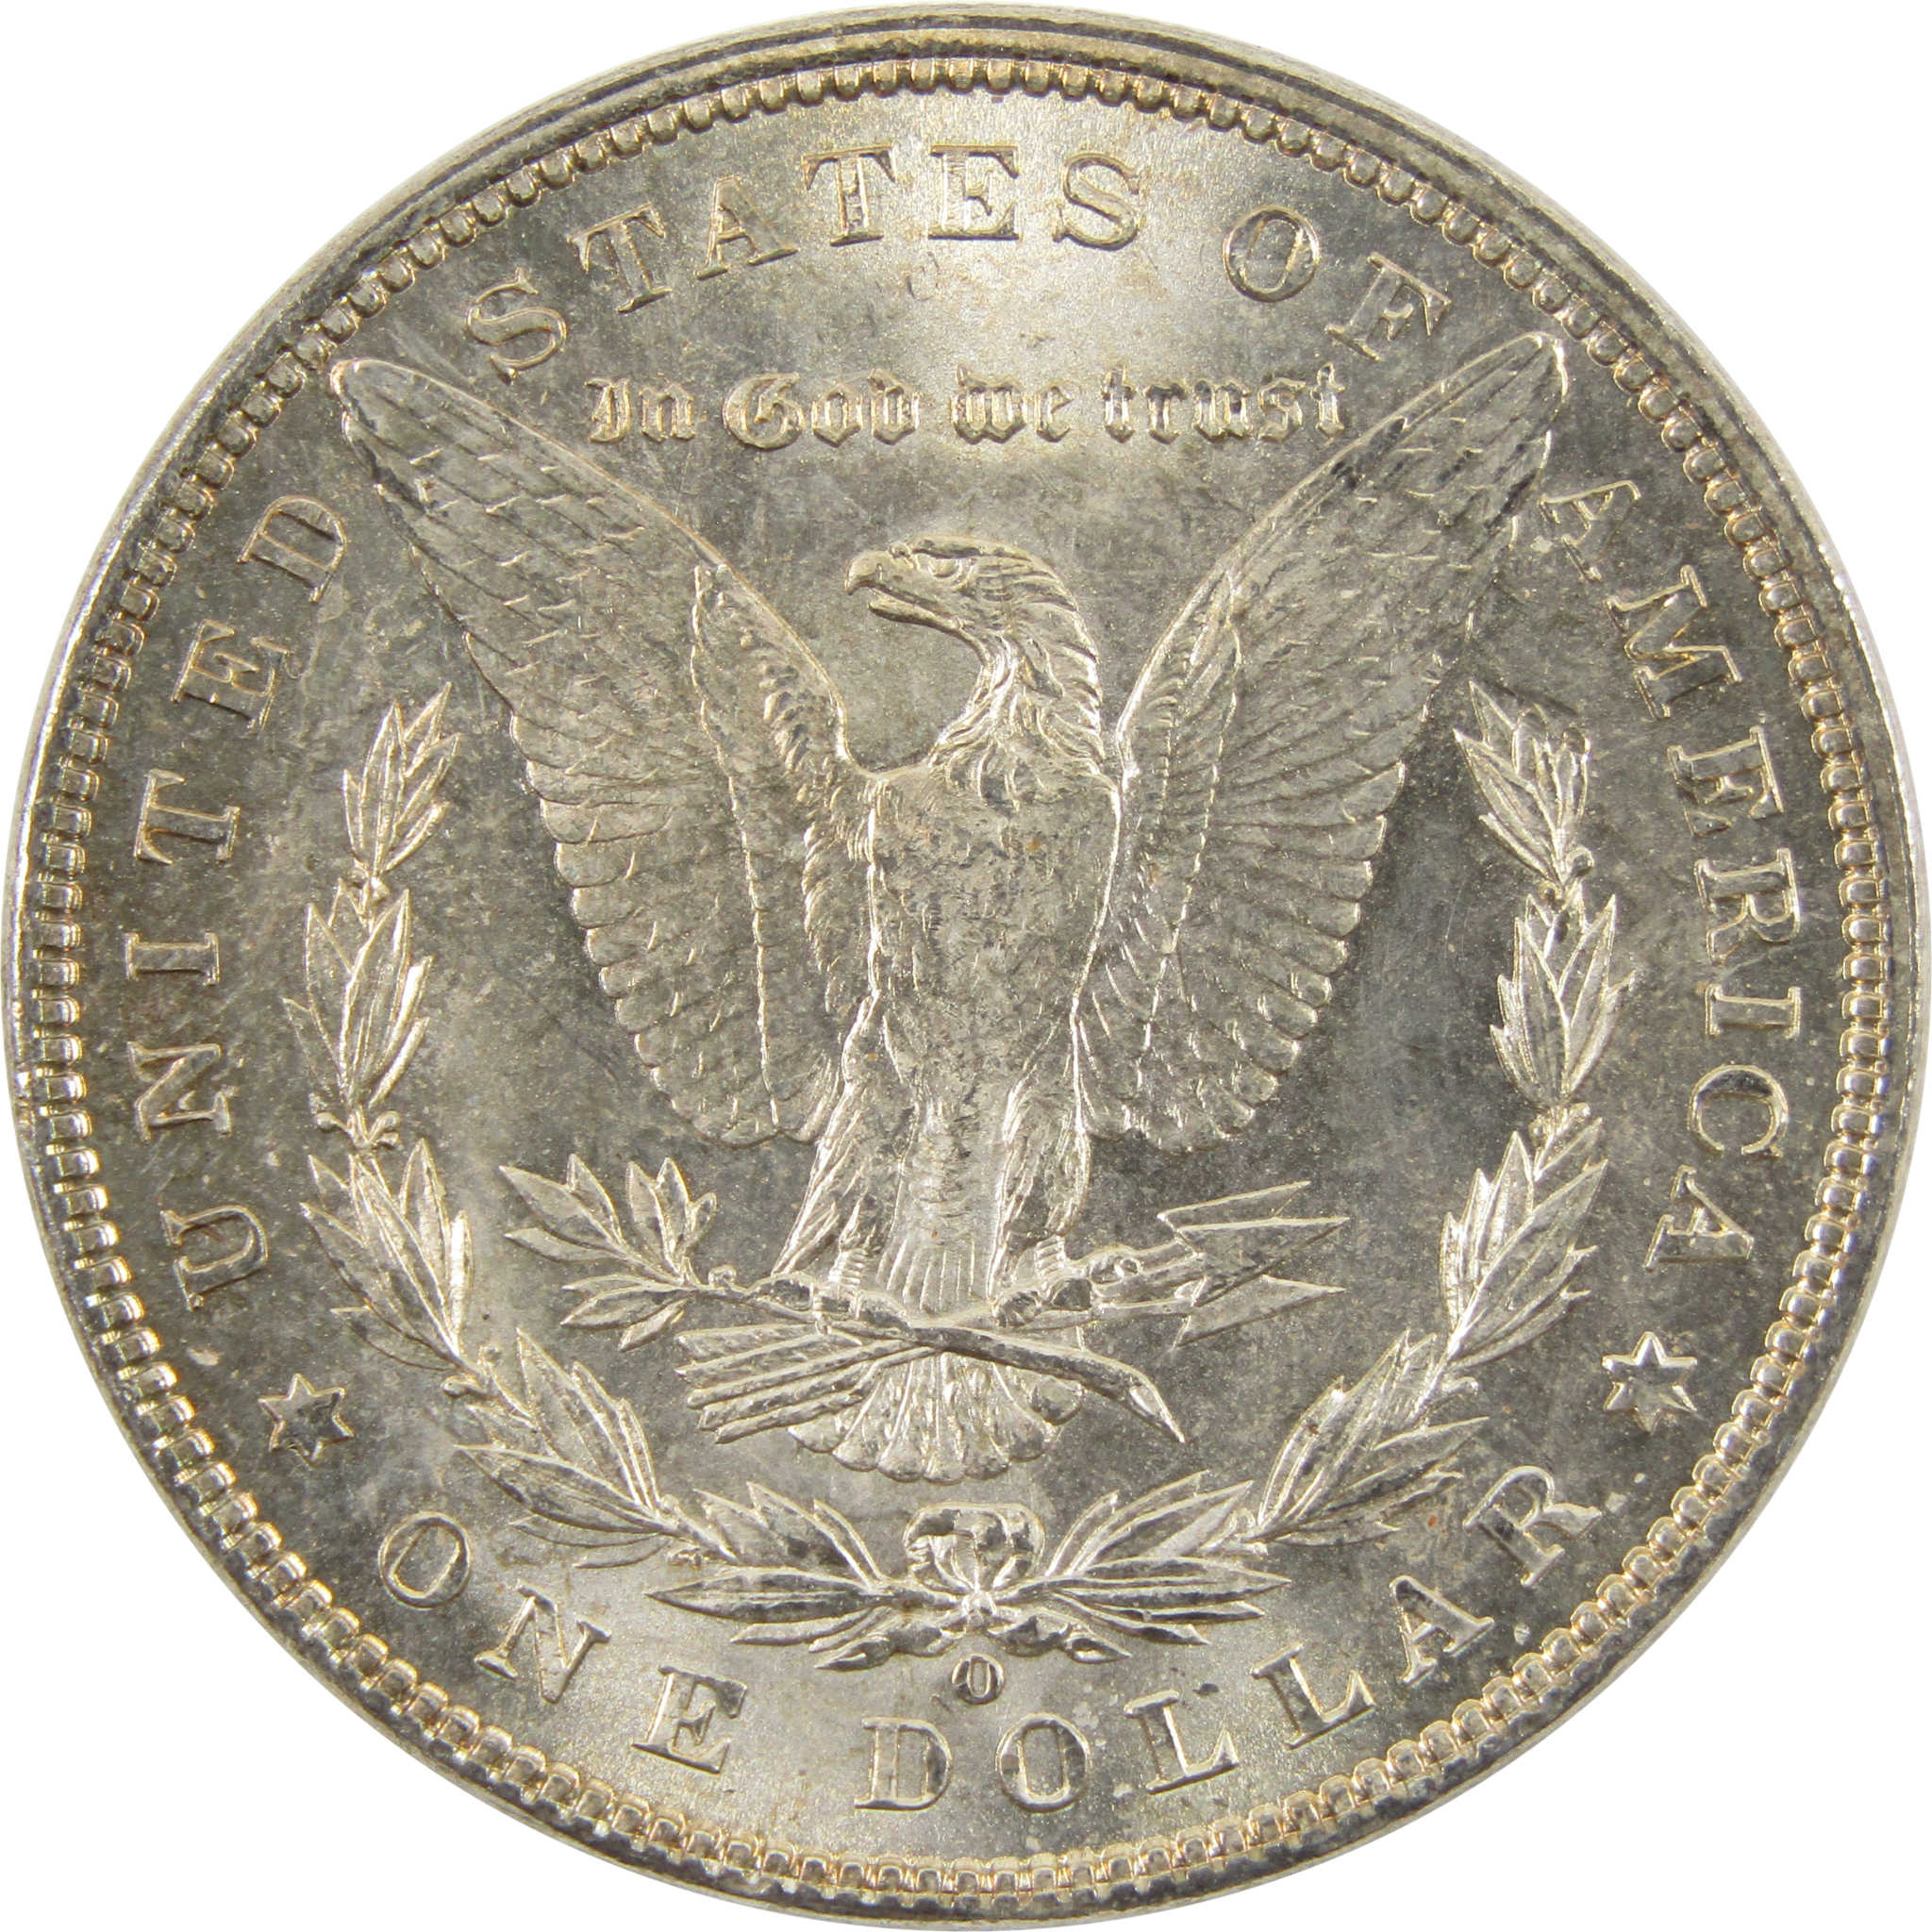 1901 O Morgan Dollar BU Uncirculated 90% Silver $1 Coin SKU:I10470 - Morgan coin - Morgan silver dollar - Morgan silver dollar for sale - Profile Coins &amp; Collectibles